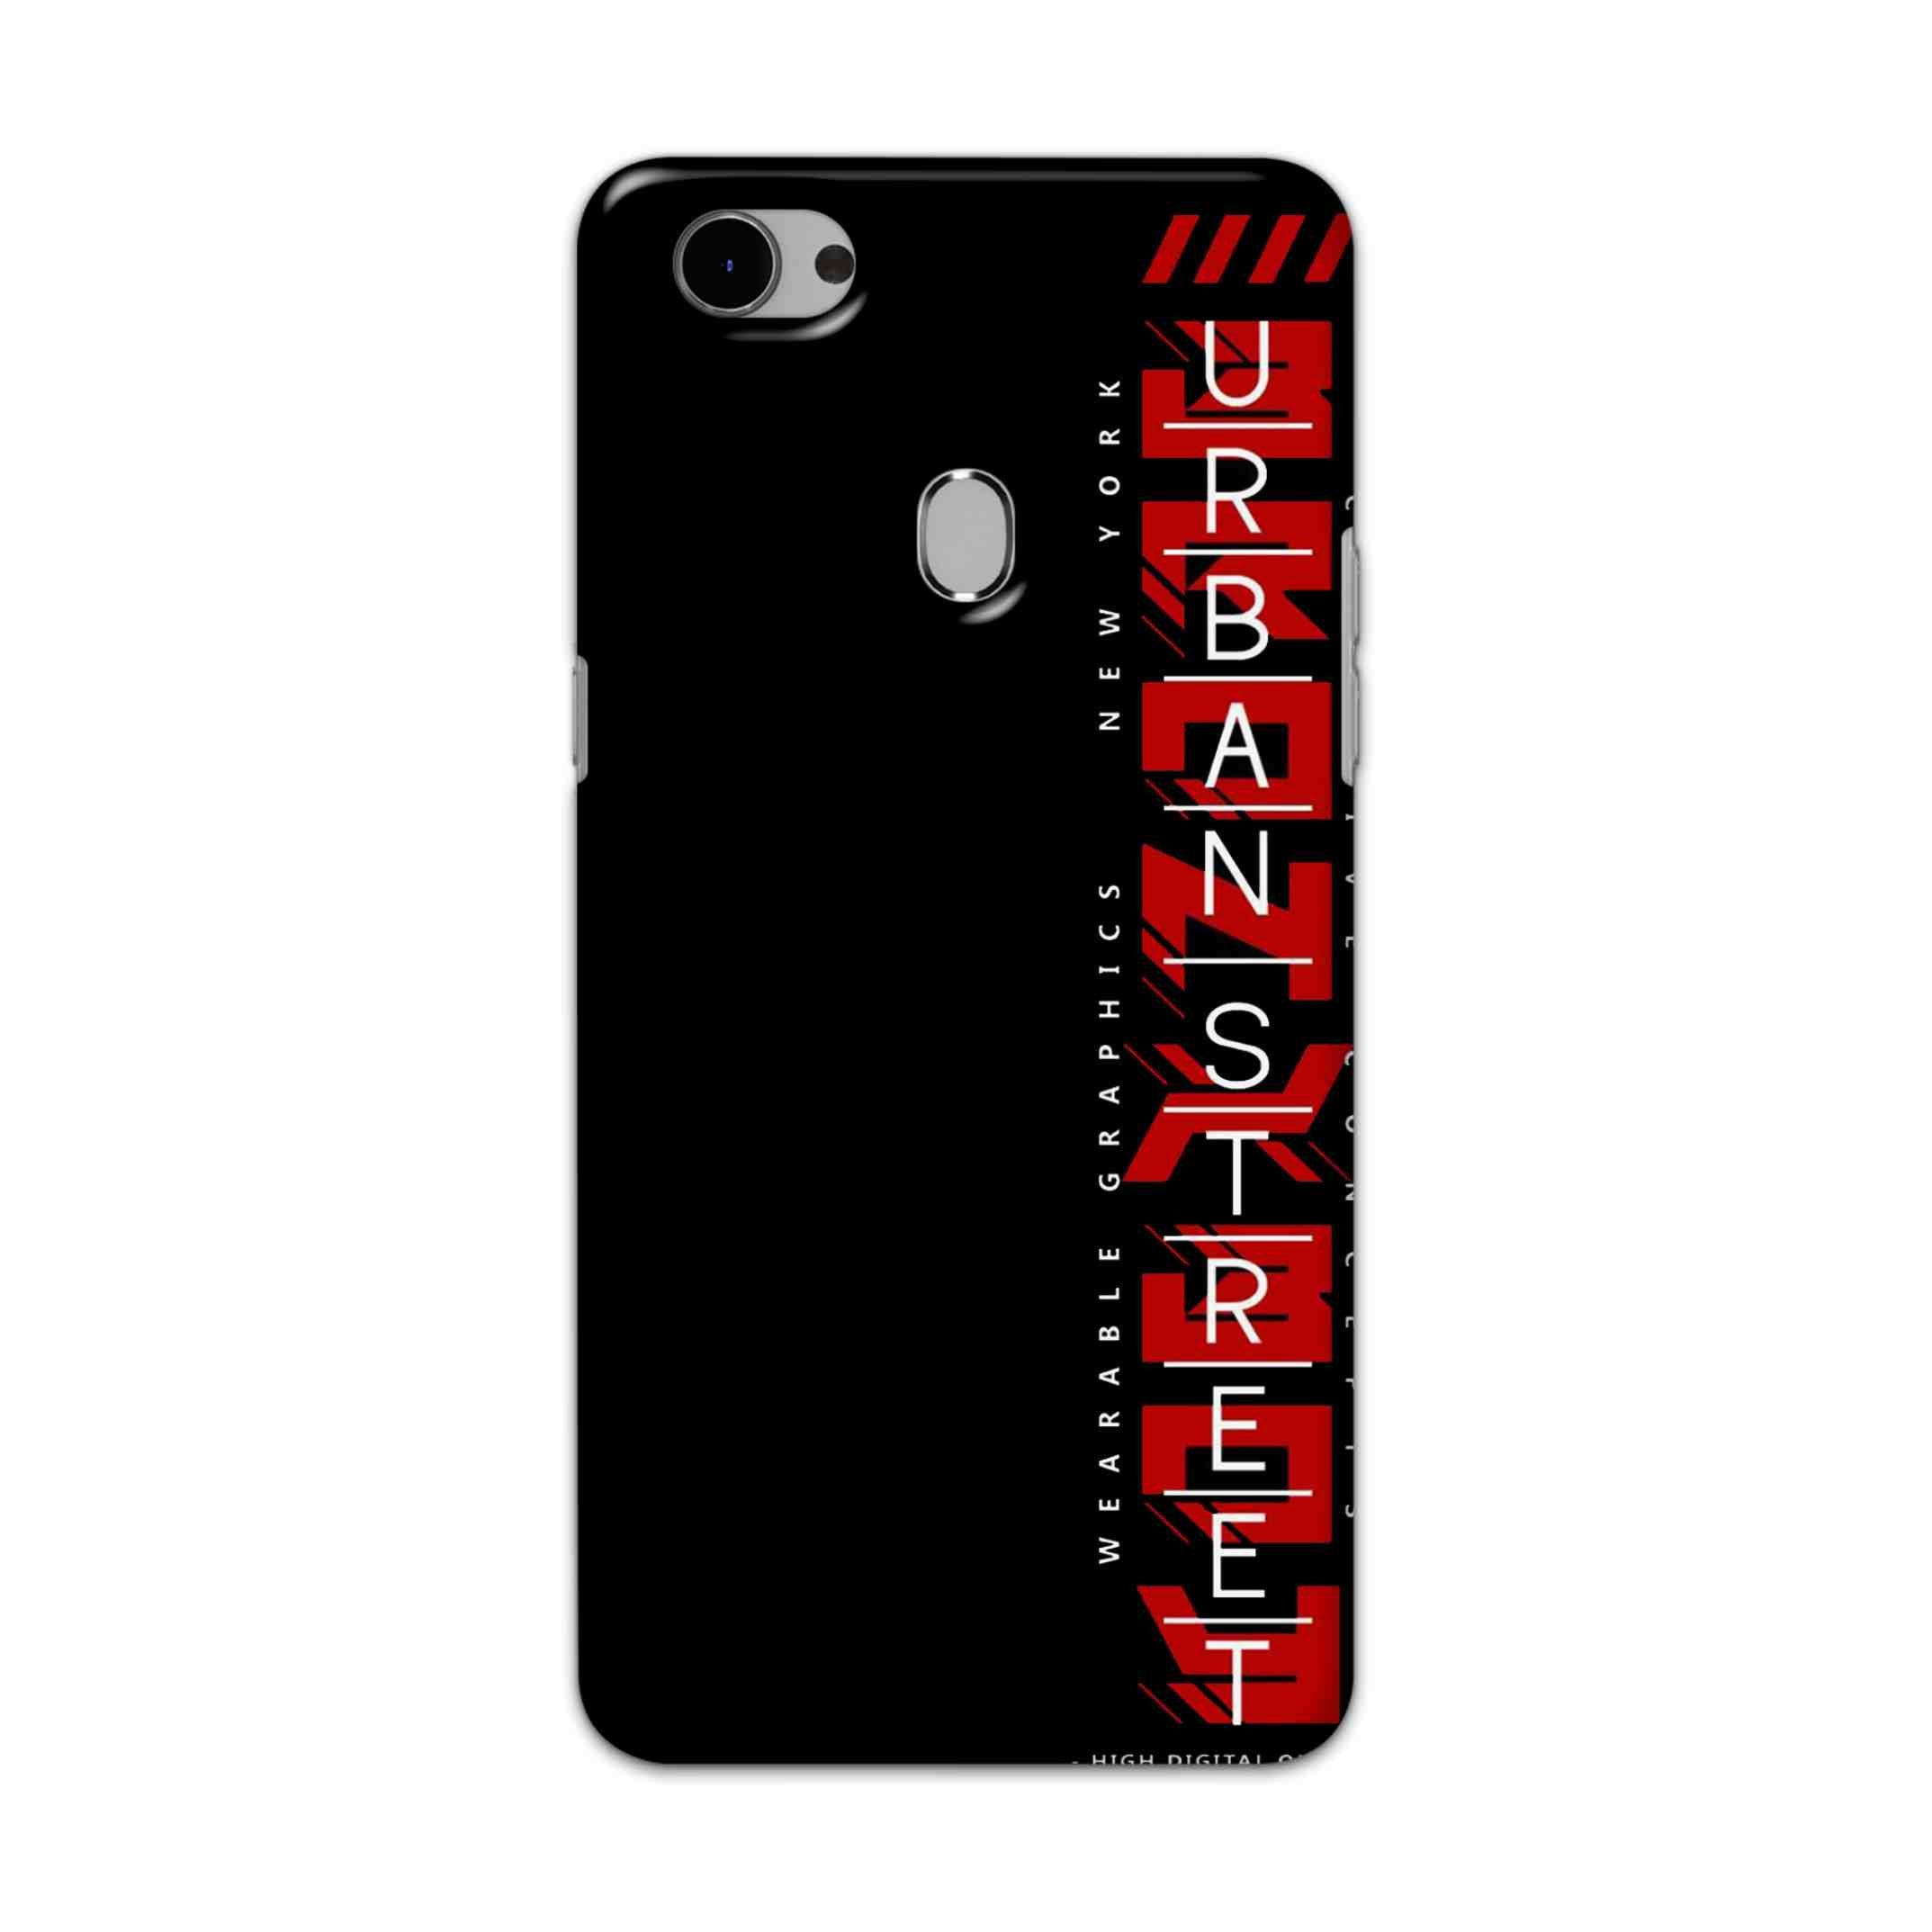 Buy Urban Street Hard Back Mobile Phone Case Cover For Oppo F7 Online